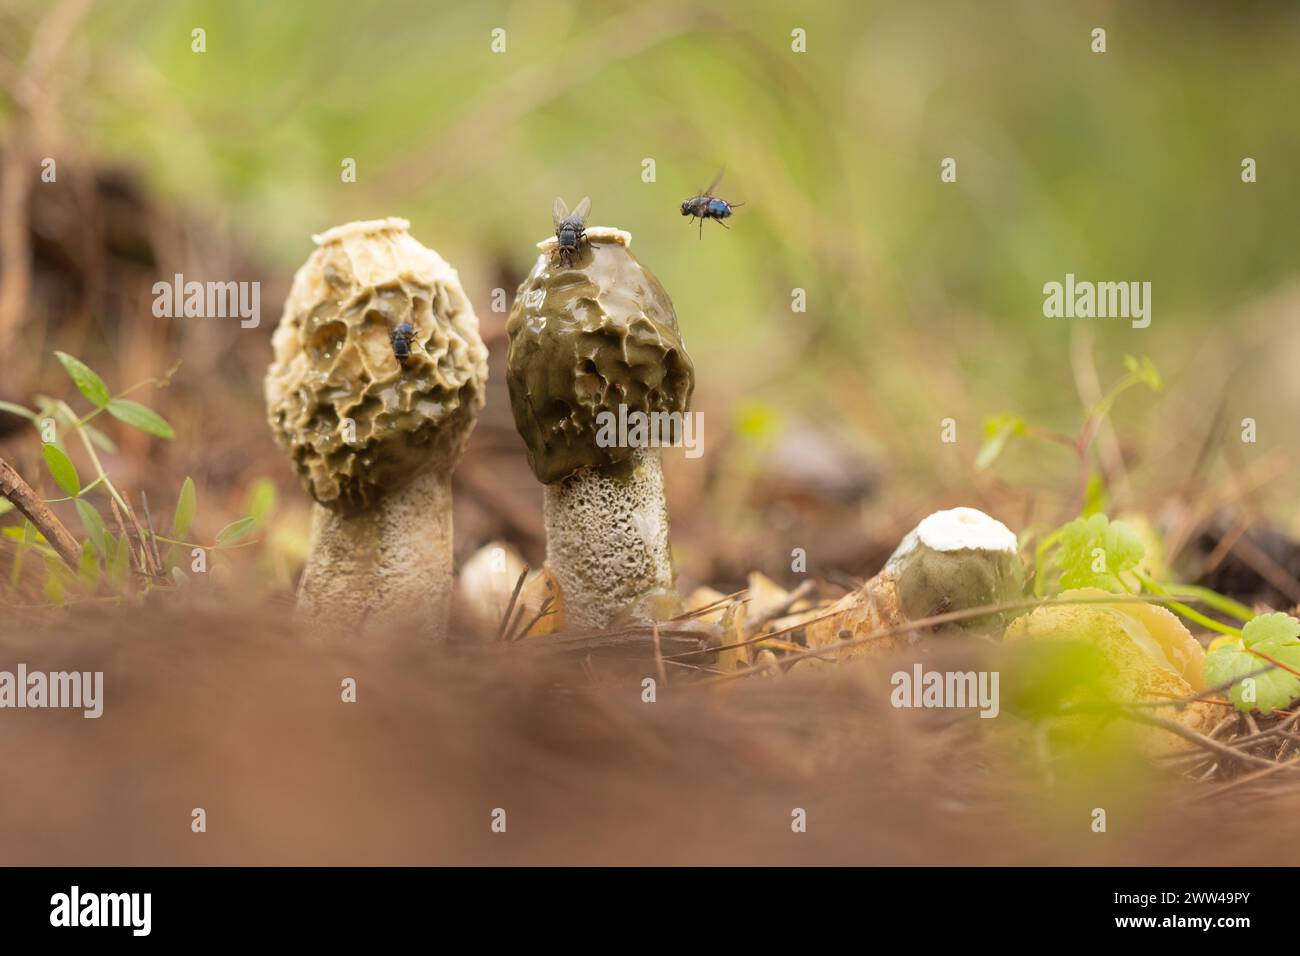 Exemplar des Gemeinen Stinkmorchels Pilze (Phallus impudicus) wächst in Wäldern Boden. Diese sind die Fruchtkörper des Pilzes, die Feeds auf Verrottenden pflanzlichen matt Stockfoto